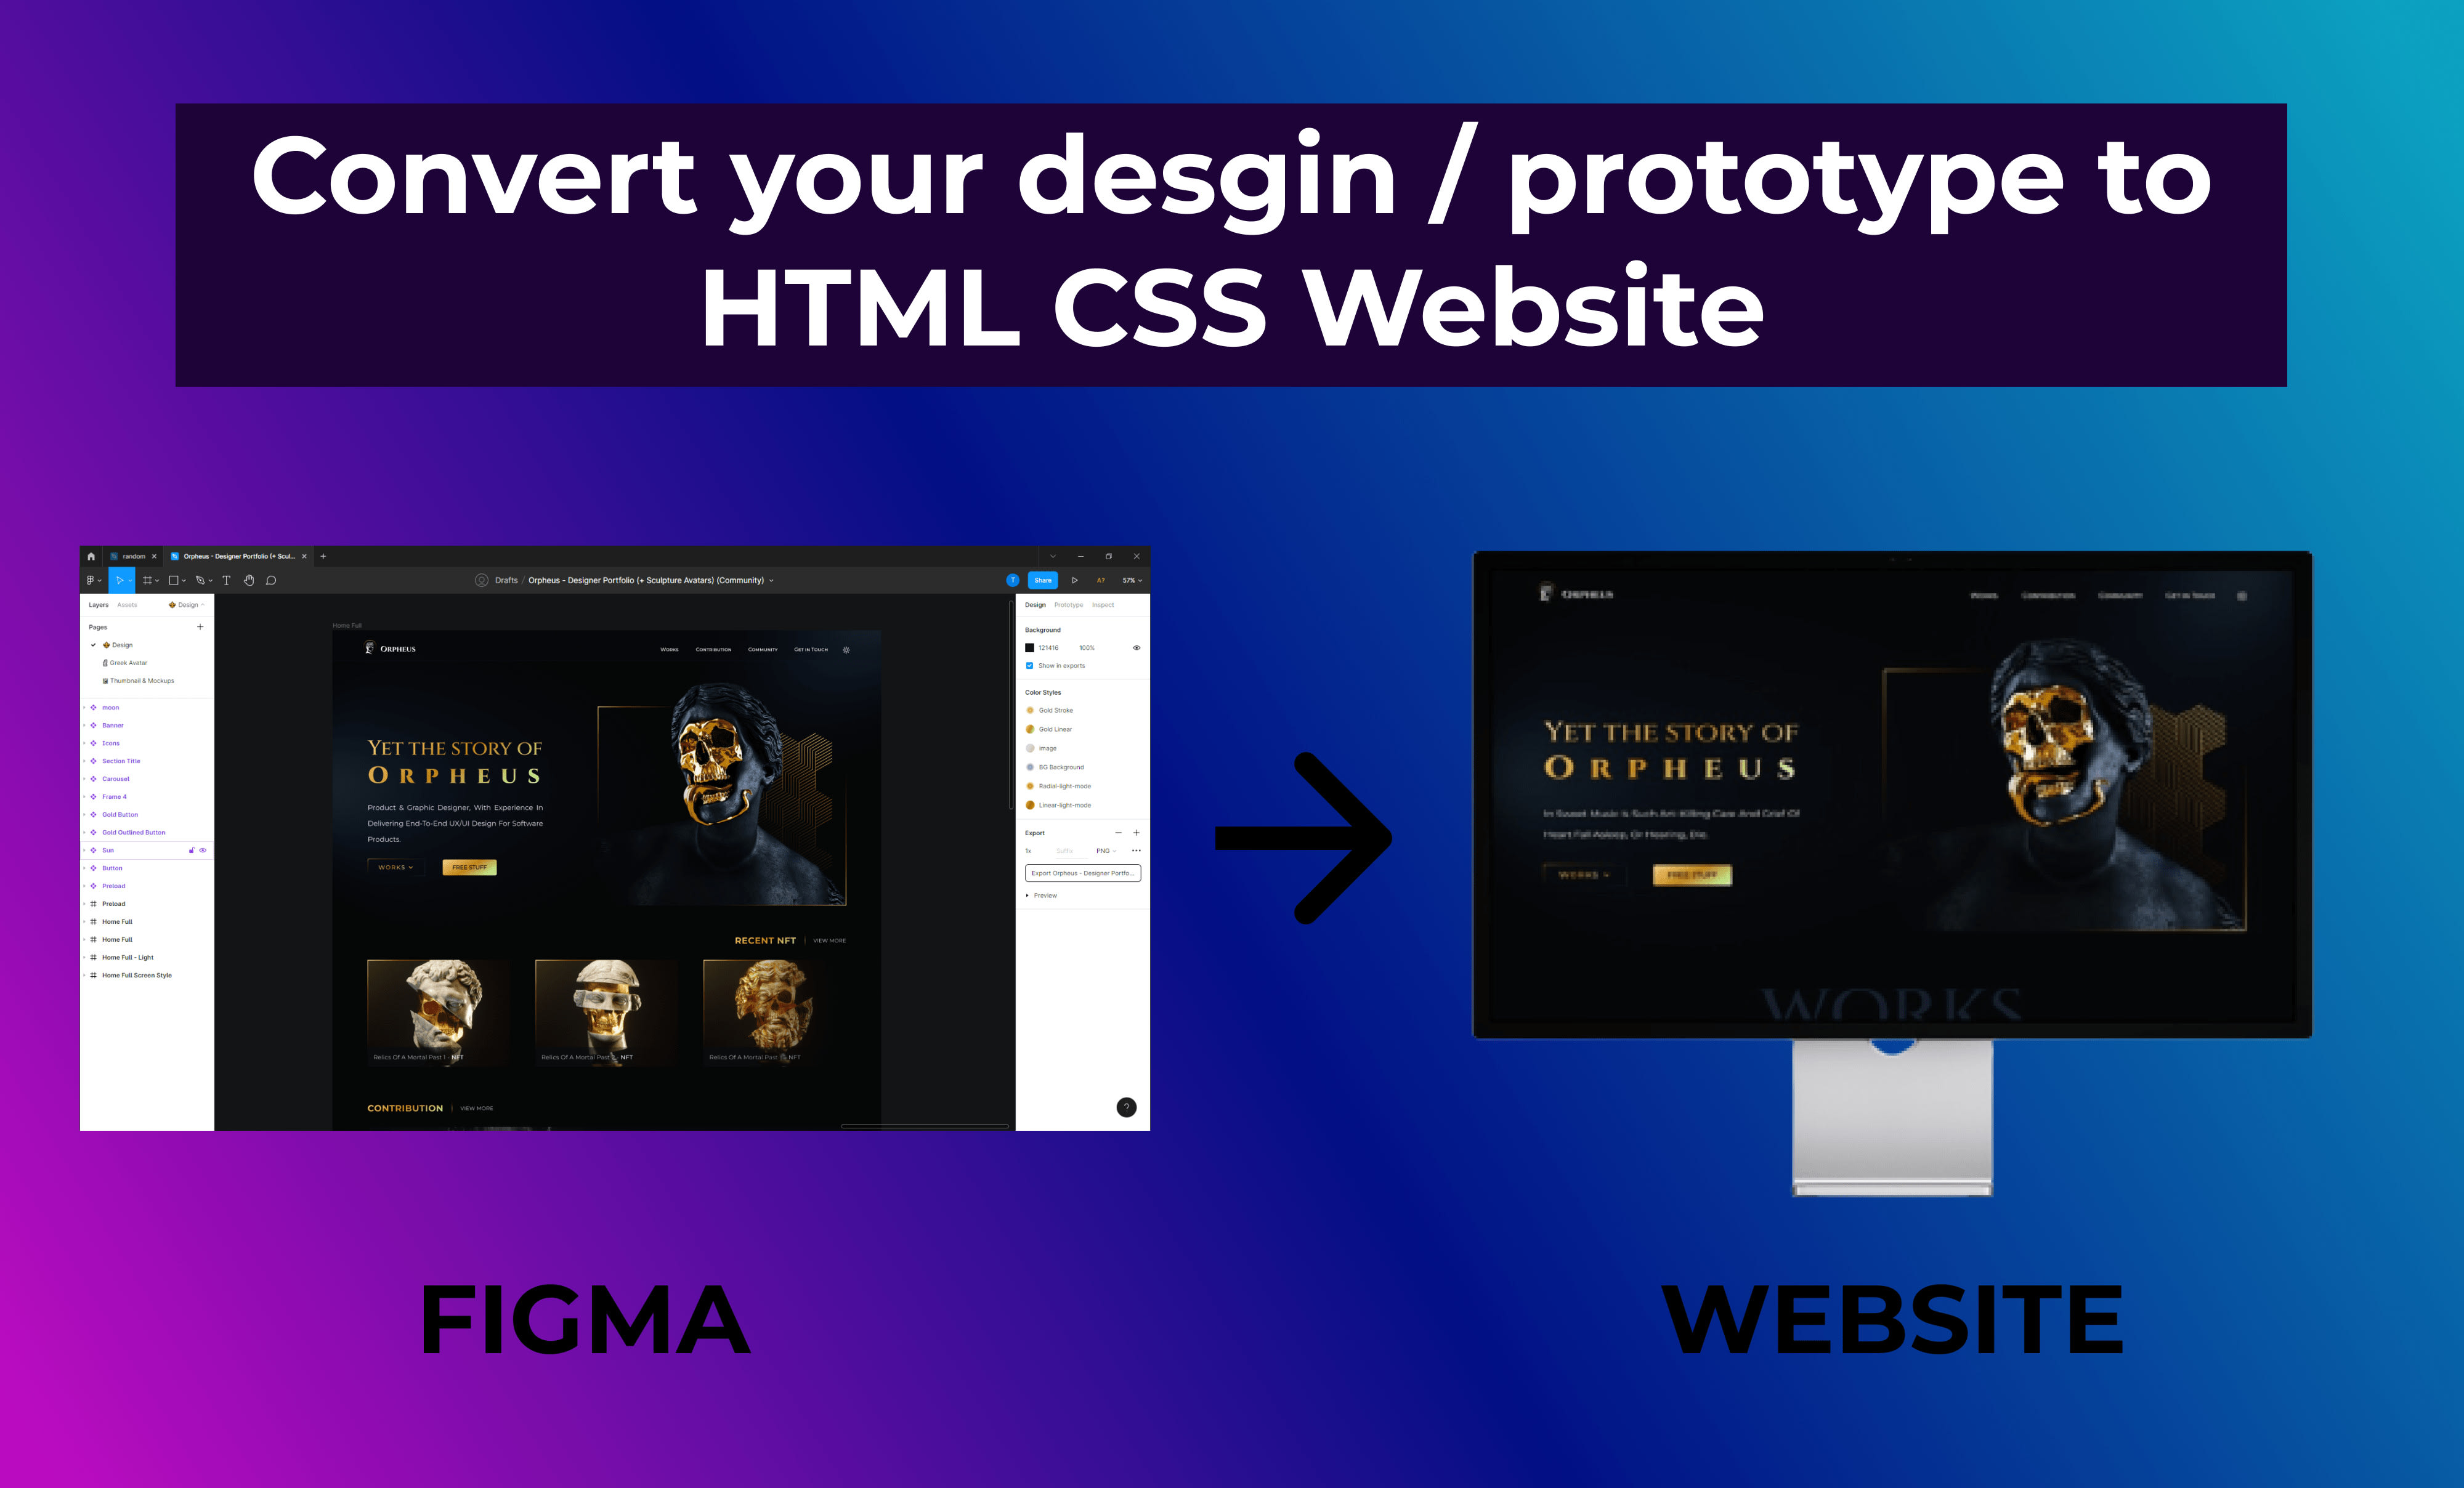 Từ đồ họa đến website: Bạn đã thiết kế một mẫu đồ họa đẹp mắt và muốn chuyển đổi nó thành một website chuyên nghiệp và khả dụng. Hãy xem hình ảnh liên quan để biết cách chuyển đổi thiết kế đồ họa thành một trang web tuyệt vời.